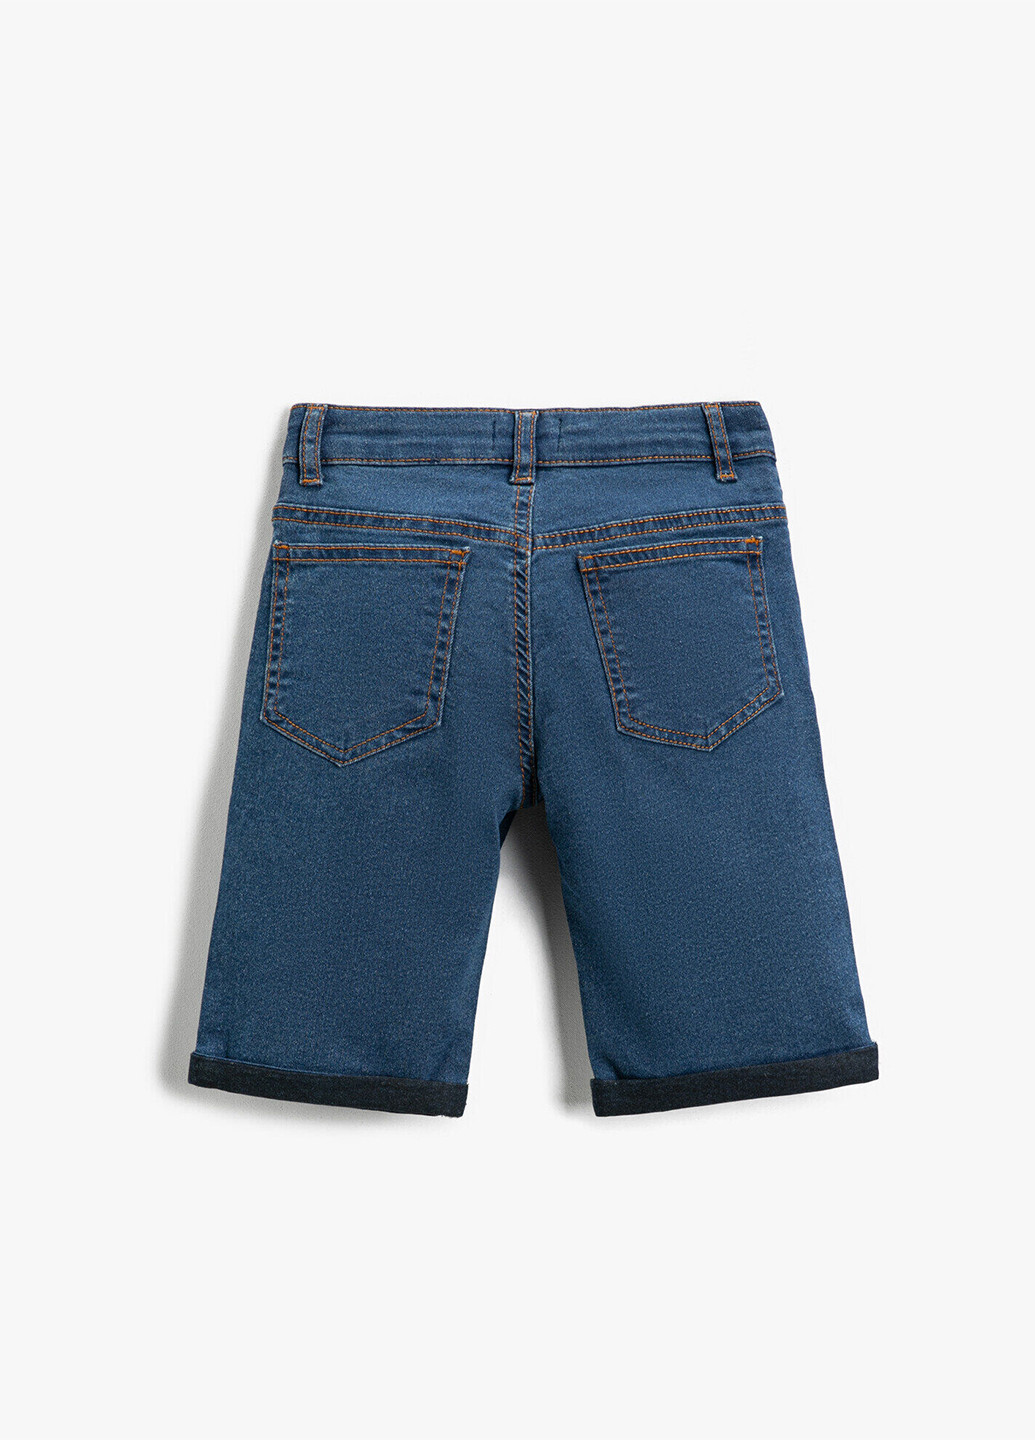 Шорты KOTON однотонные синие джинсовые хлопок